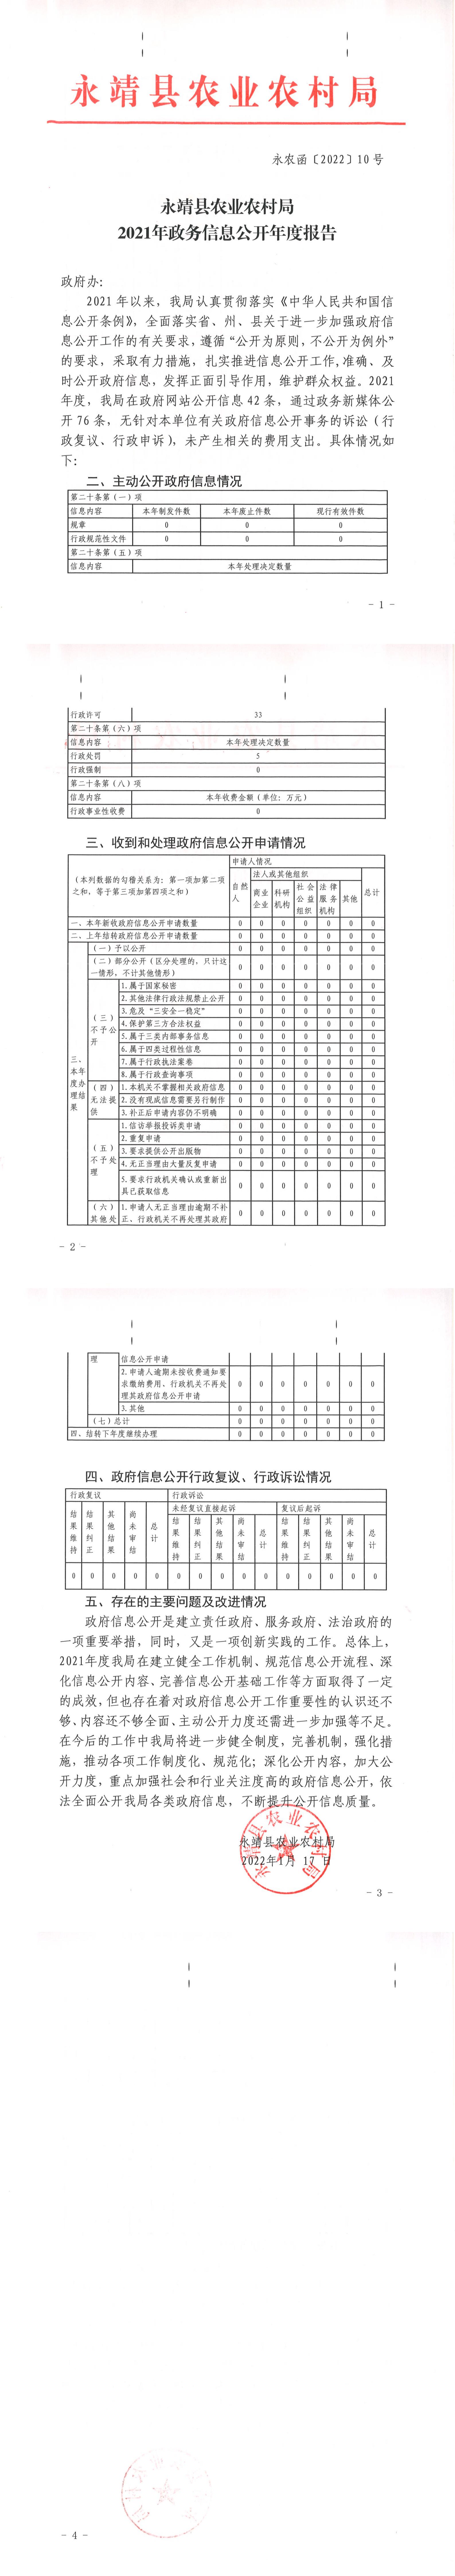 2021年度县农业农村局政府信息公开工作报告.jpg